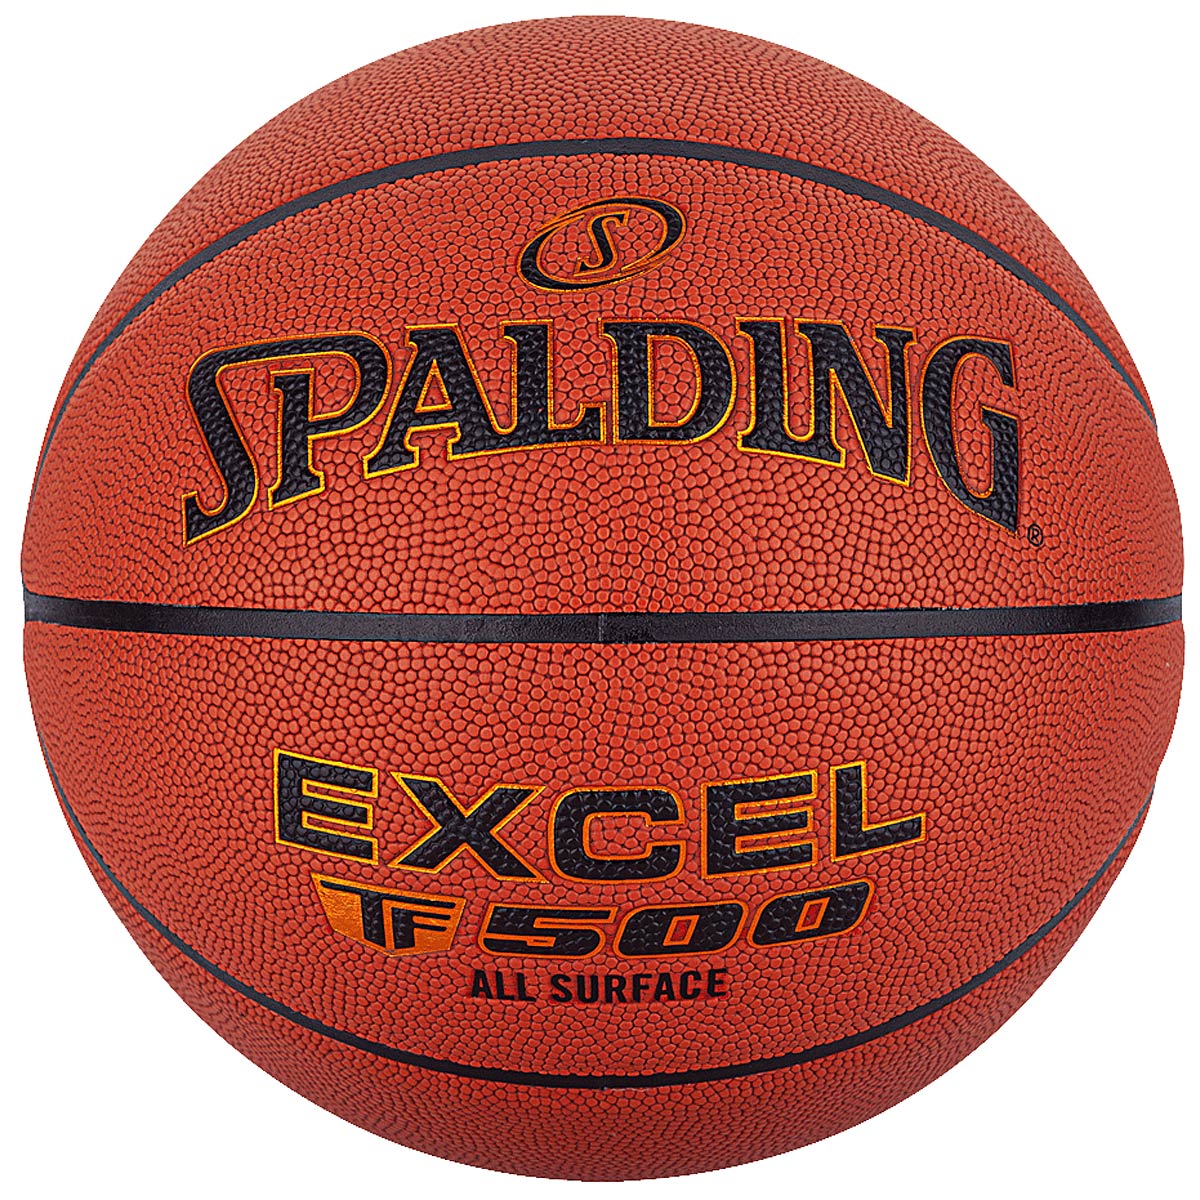 Image of Spalding Excel Tf-500 Composite Basketball, Orange